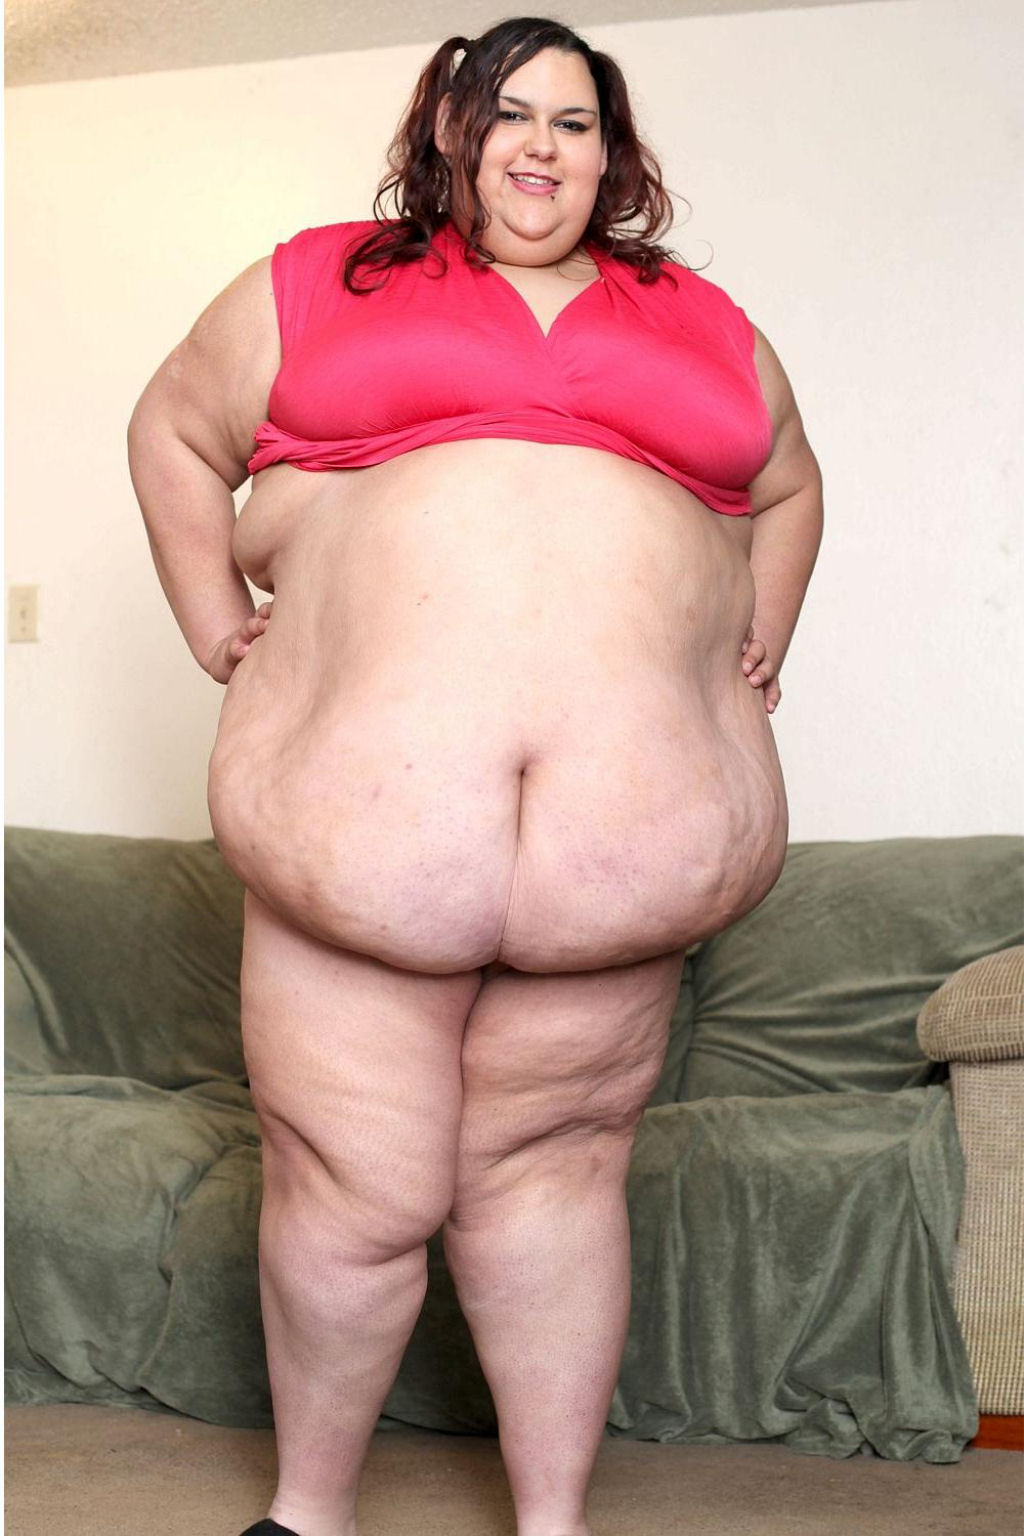 Americana luta para ser a mulher mais... gorda do mundo!